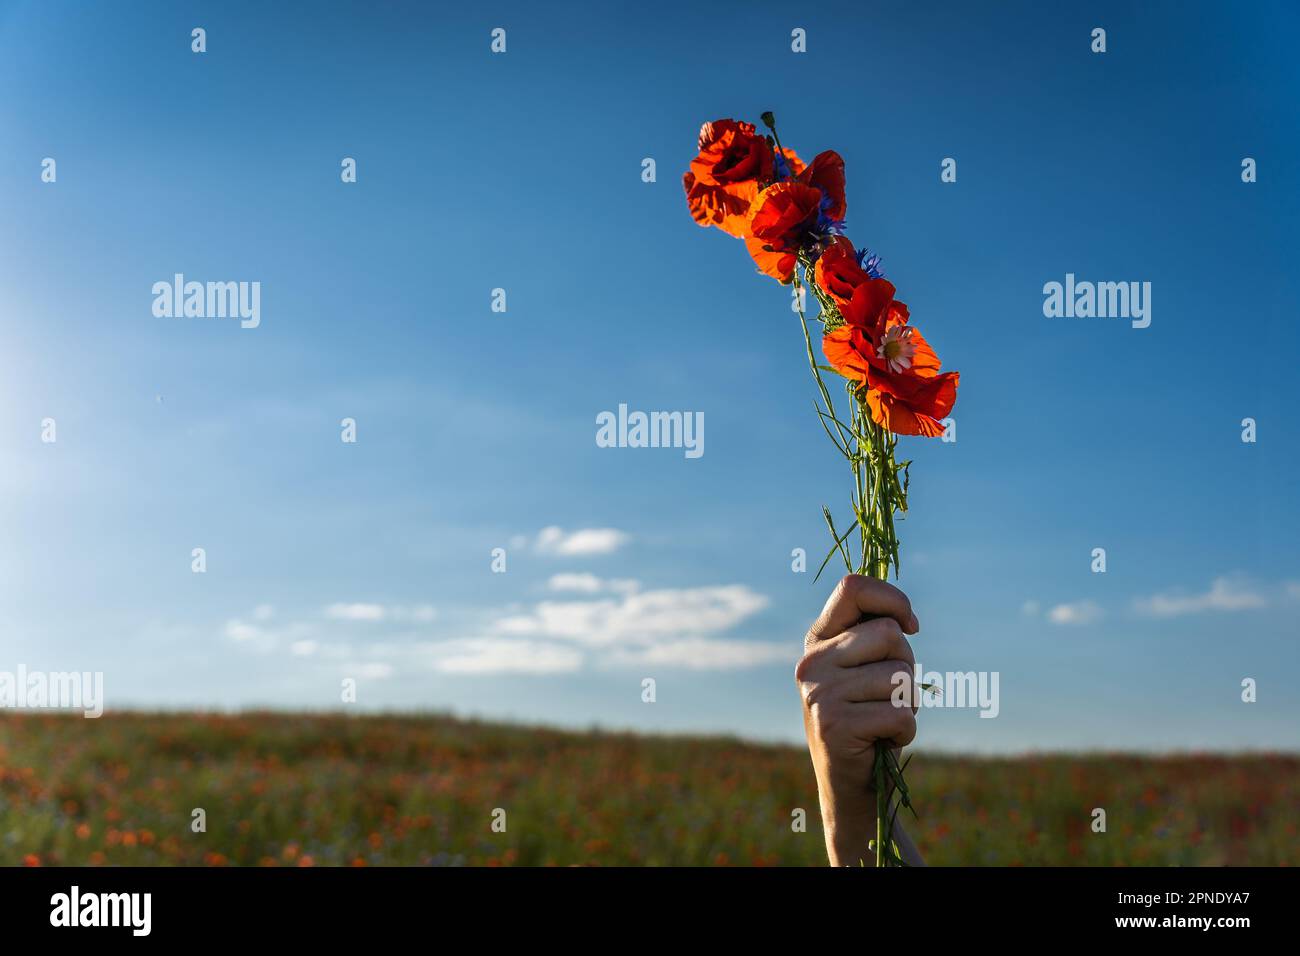 Eine Frauenhand hält ein Bündel roter Mohnblumen in einem Feld vor einem blauen Himmel. Stockfoto